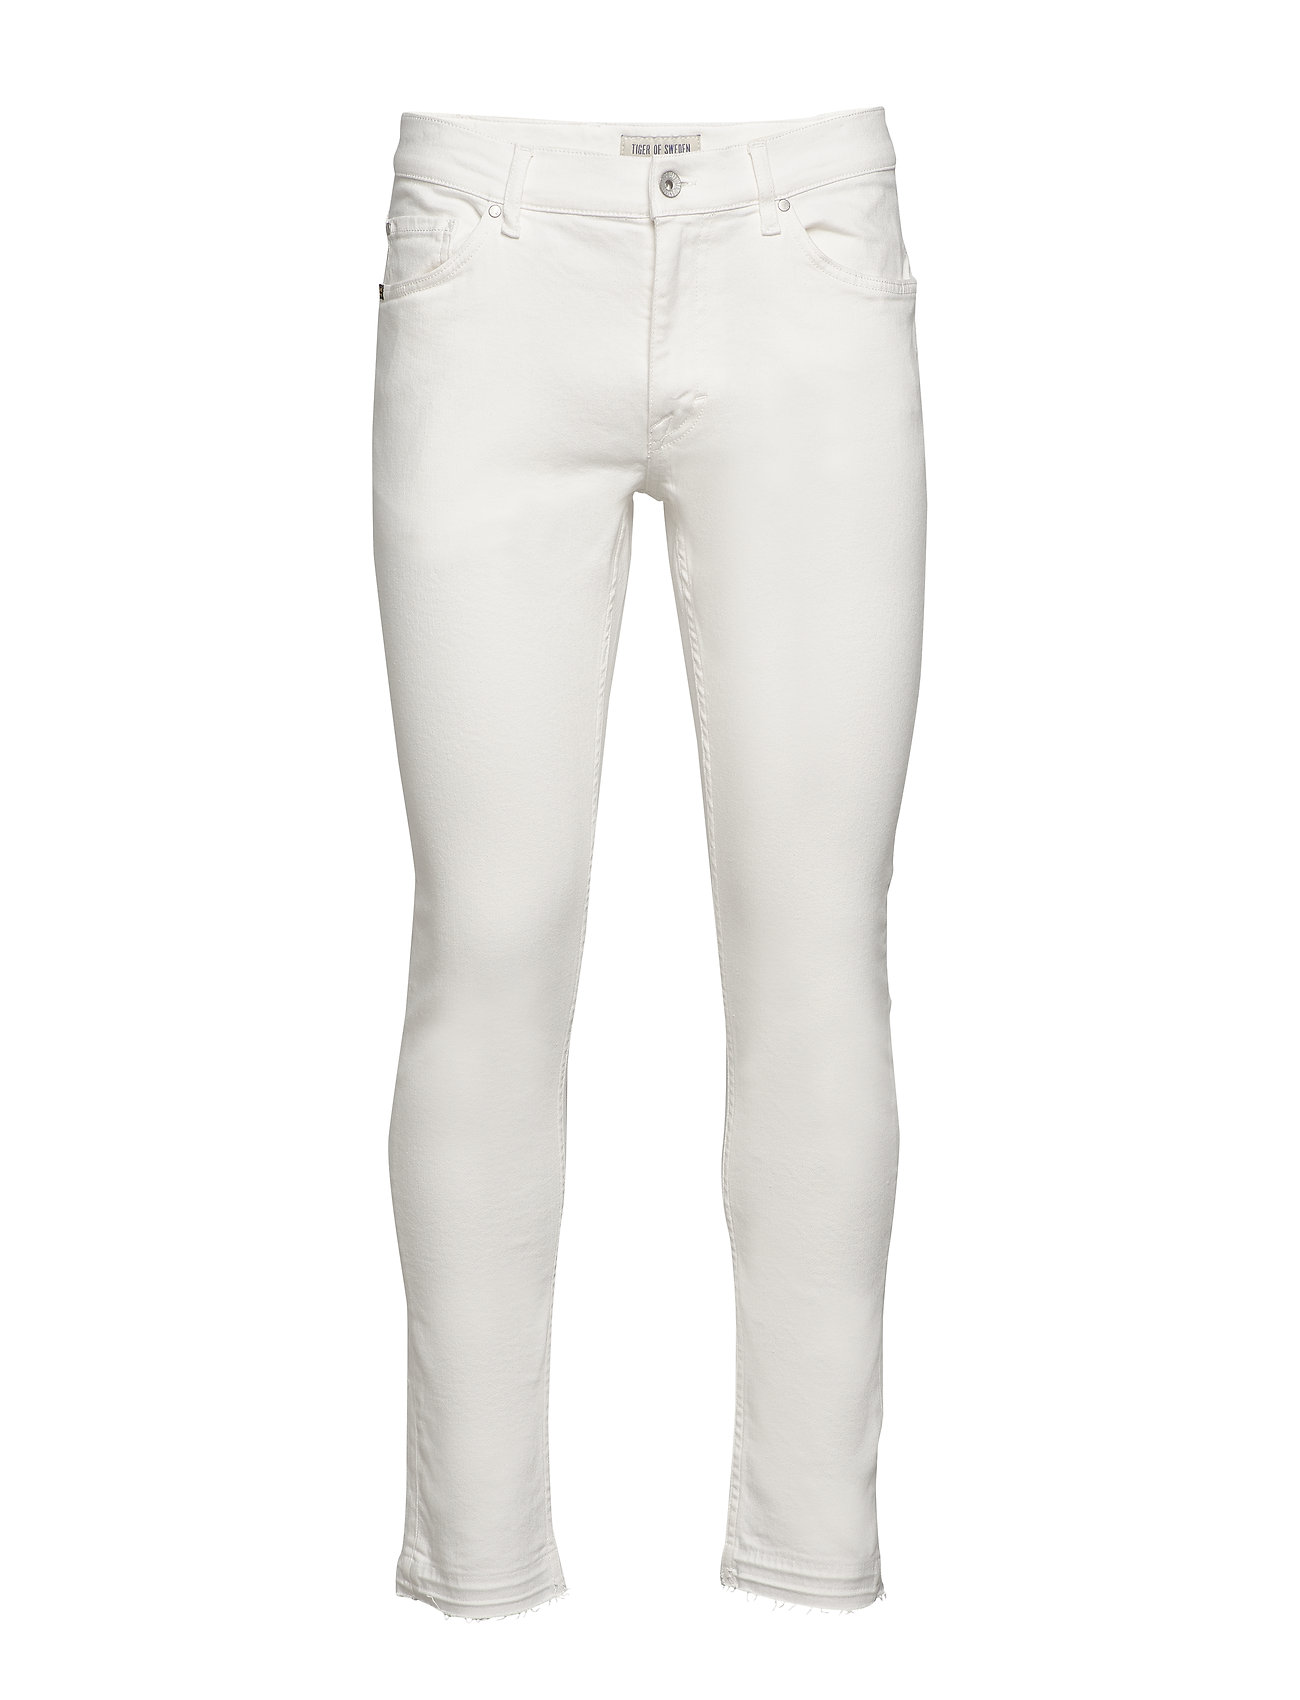 Og så videre opstrøms nikotin Tiger of Sweden Jeans slim jeans – Evolve Slim Jeans Hvid Tiger Of Sweden  Jeans til herre i Hvid - Pashion.dk